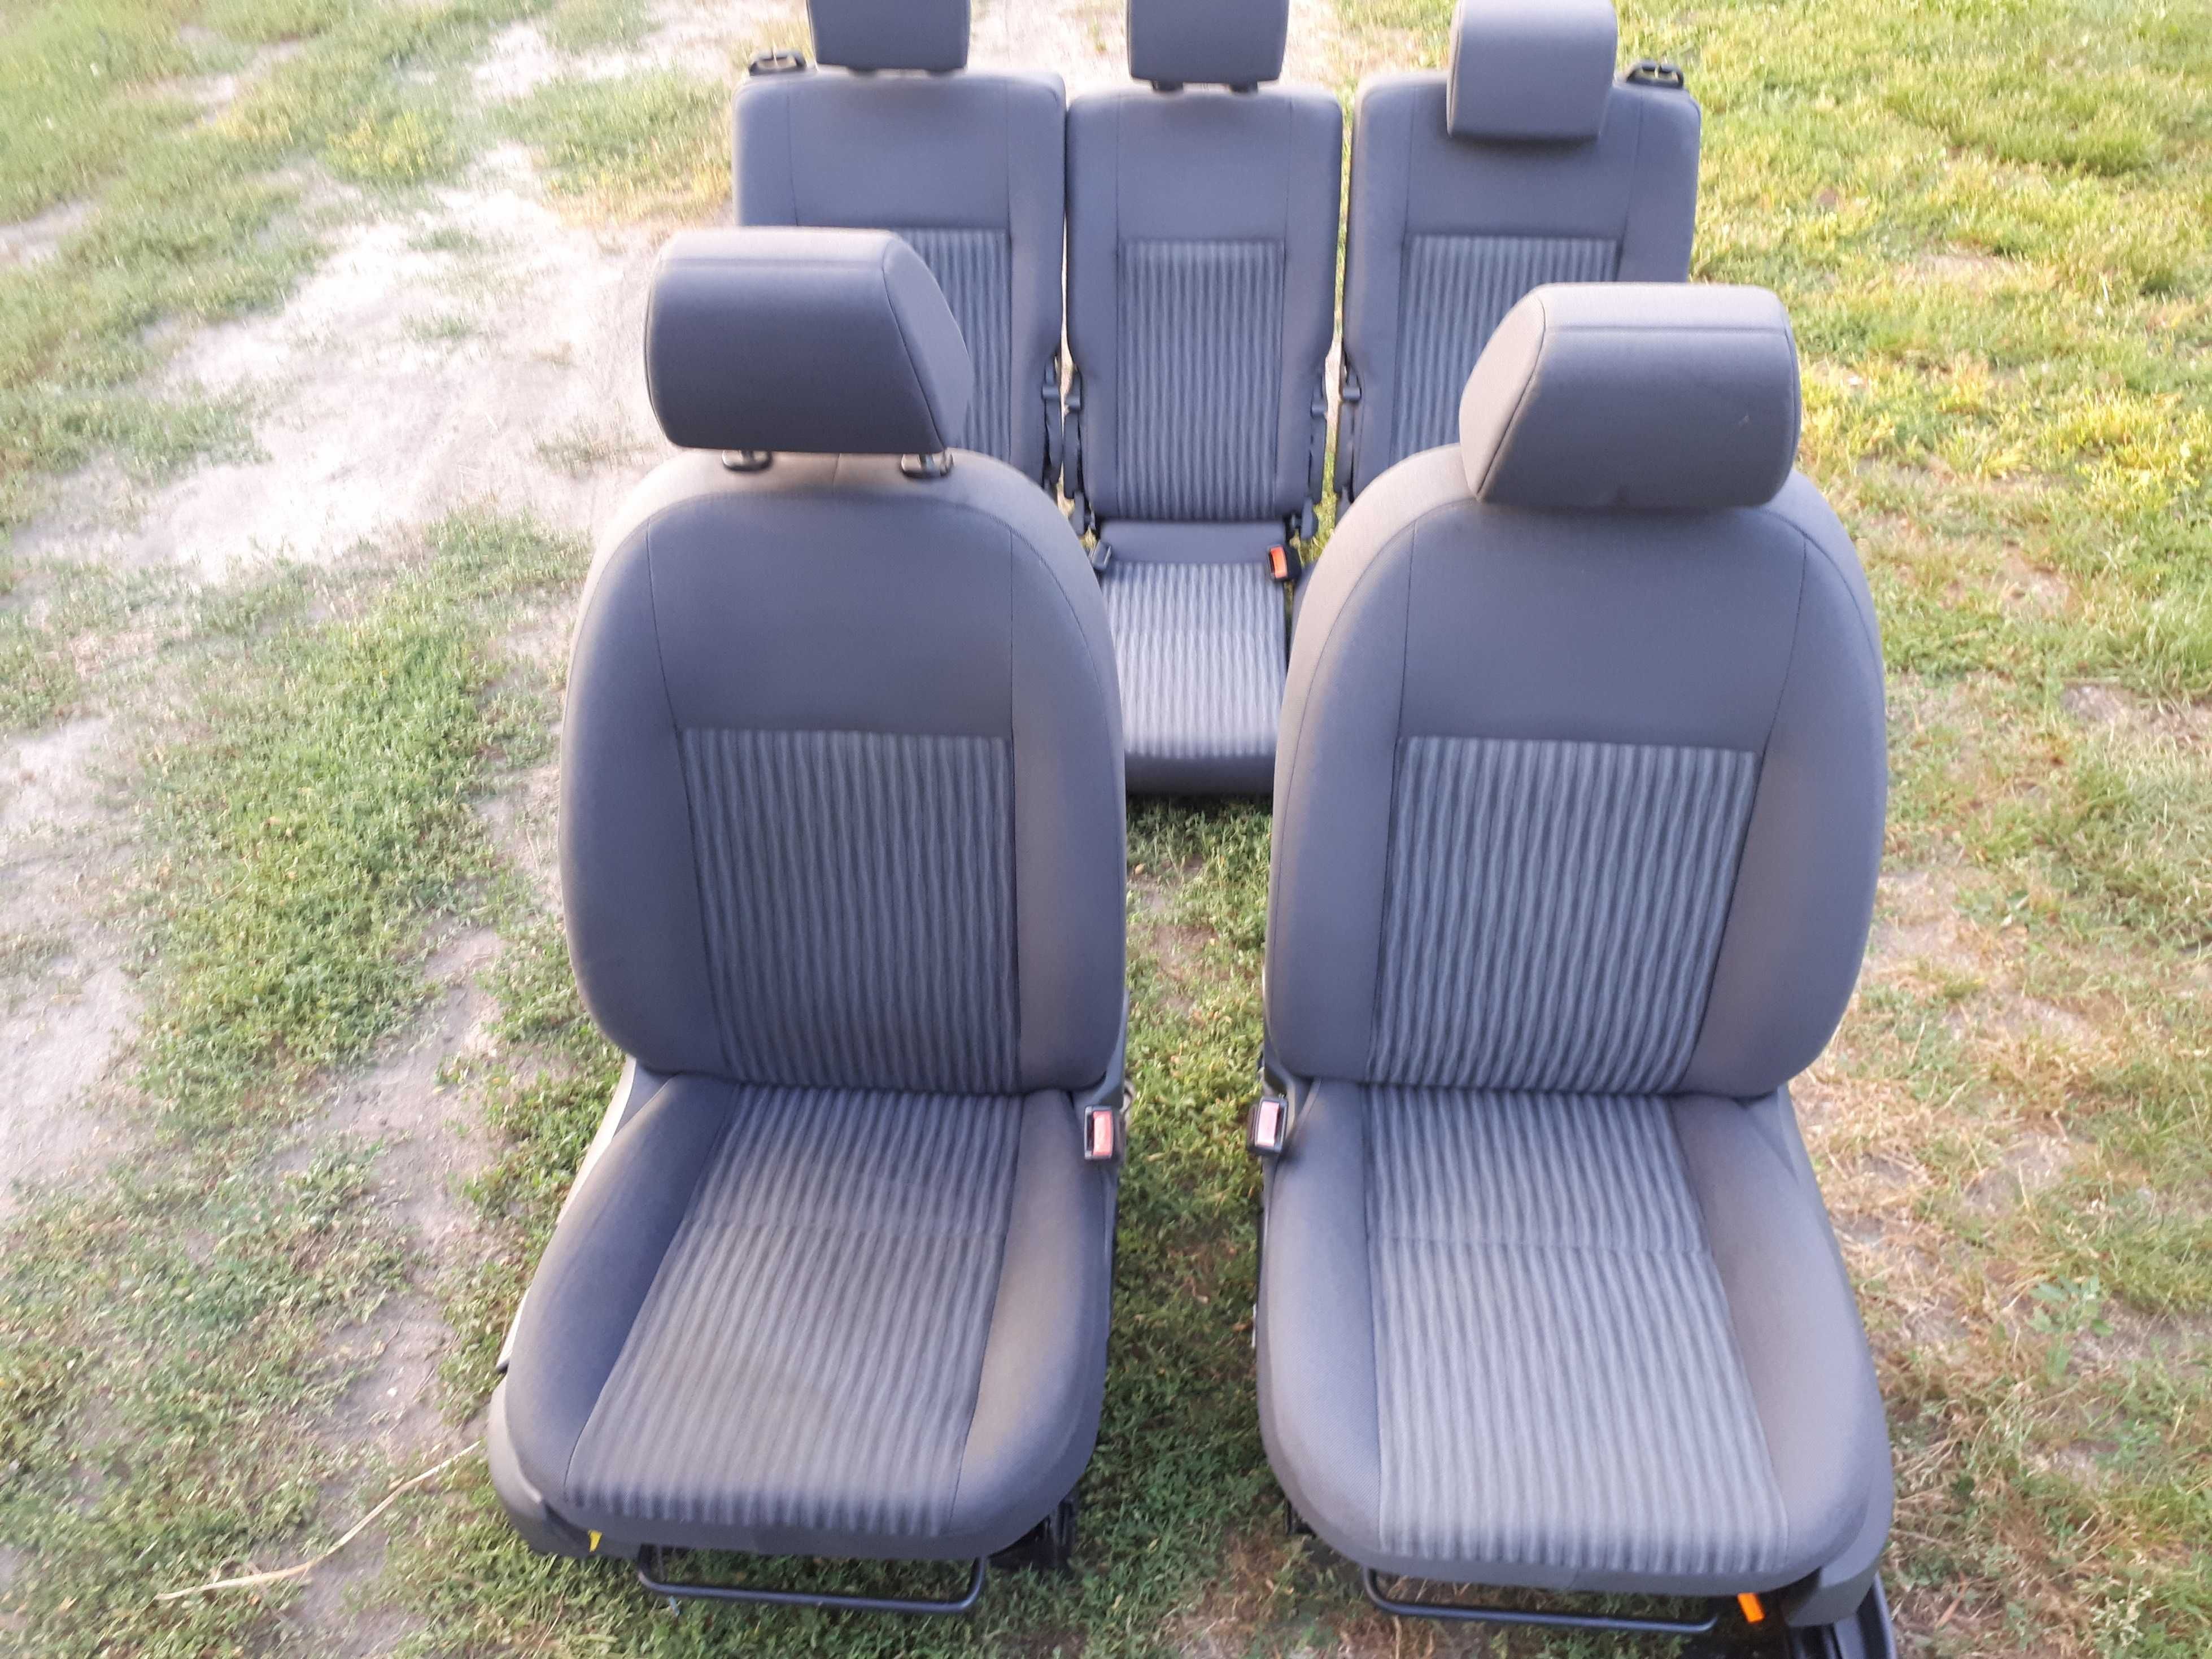 Ford C-max fotel KOMPLET foteli bez prania bez uszkodzeń